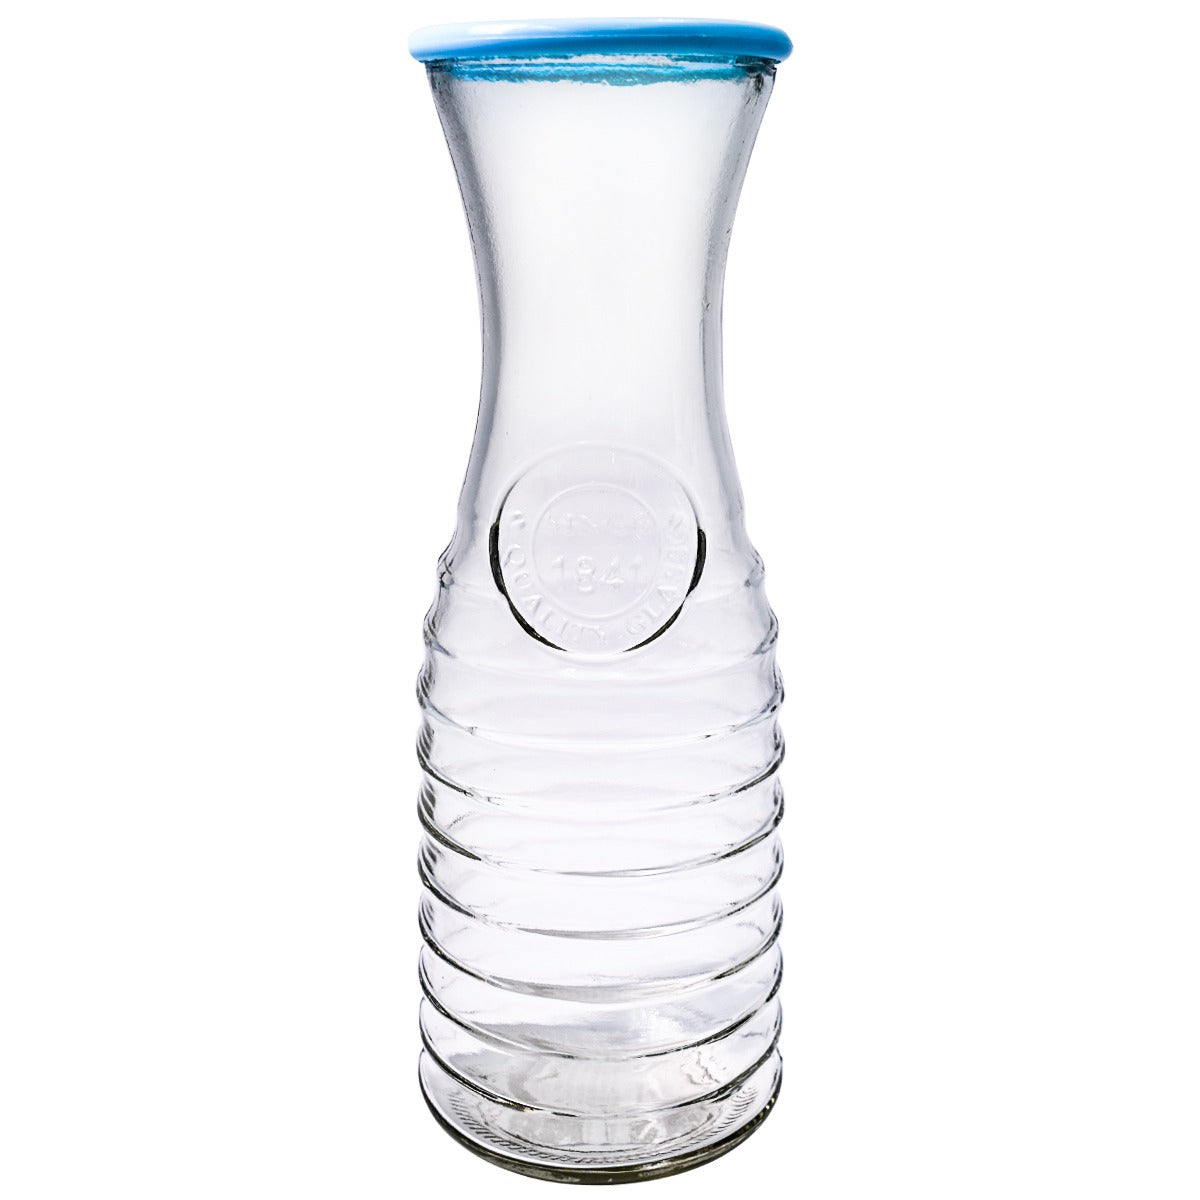 MANMAOHE Juego de jarras de vidrio vintage, jarra de agua de noche azul con  juego de vidrio, jarra de agua de vidrio retro con taza de vidrio para